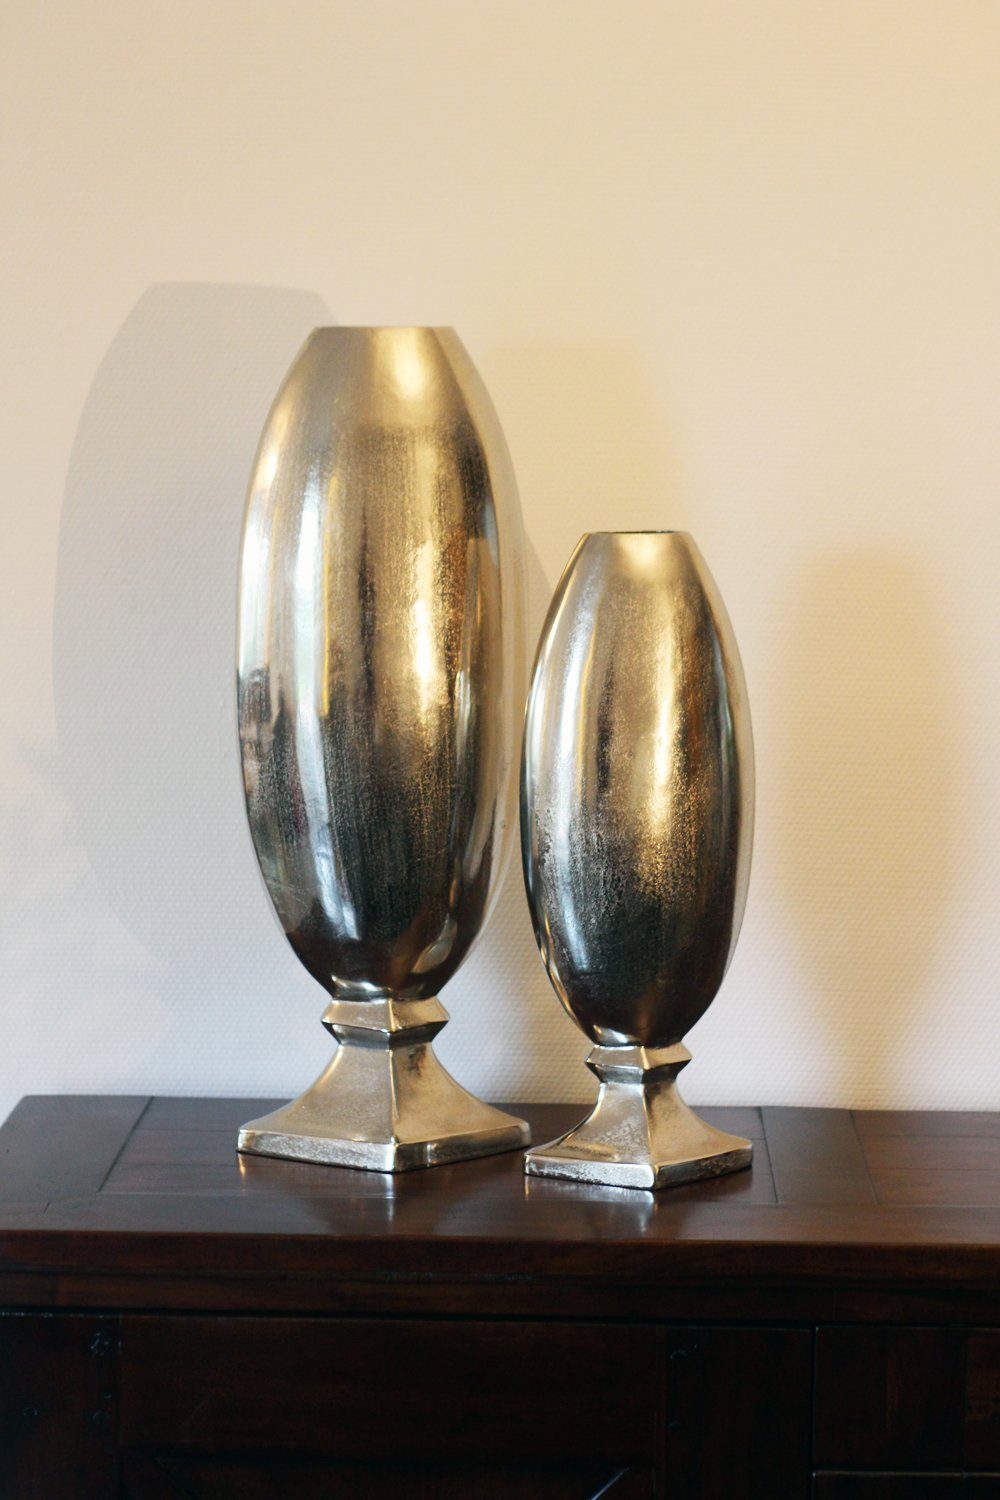 Arnusa Bodenvase silber edle cm Vase Metall Design 70 Dekovase große Pokal Aluminium, Edels